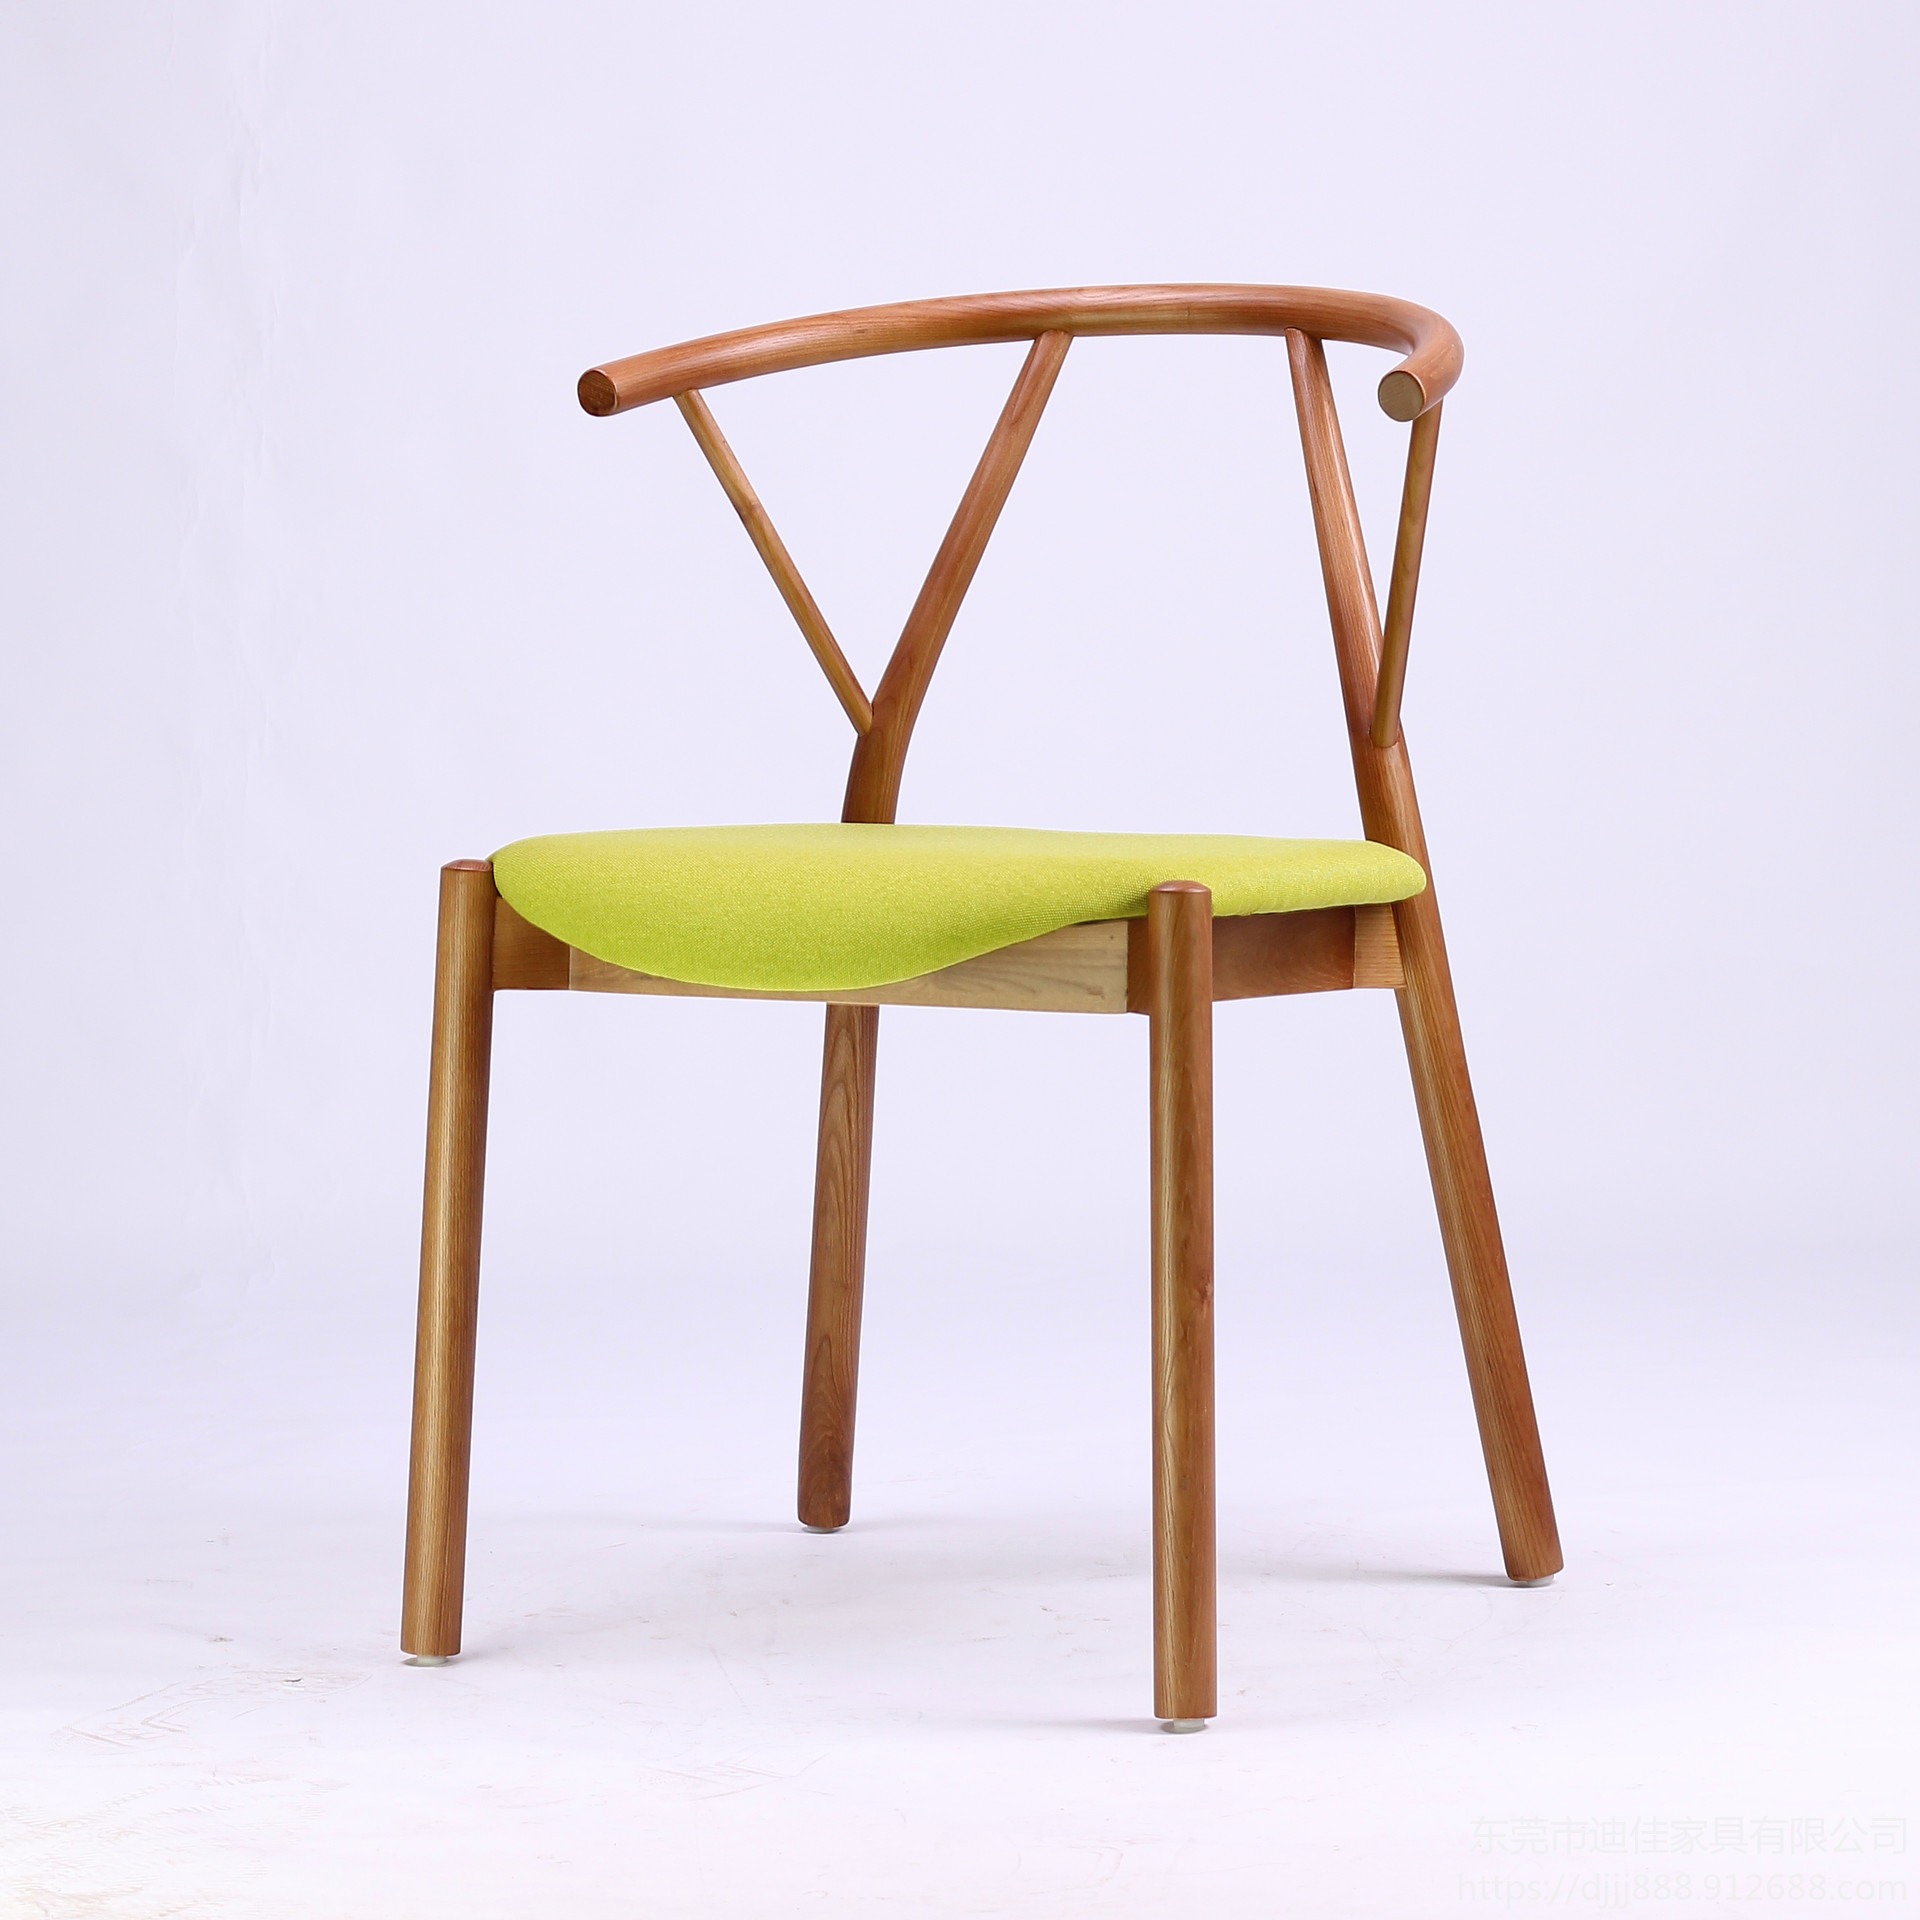 湖南实木餐桌 餐椅  实木餐椅 中餐餐椅 木质餐椅 工程定制餐厅家具